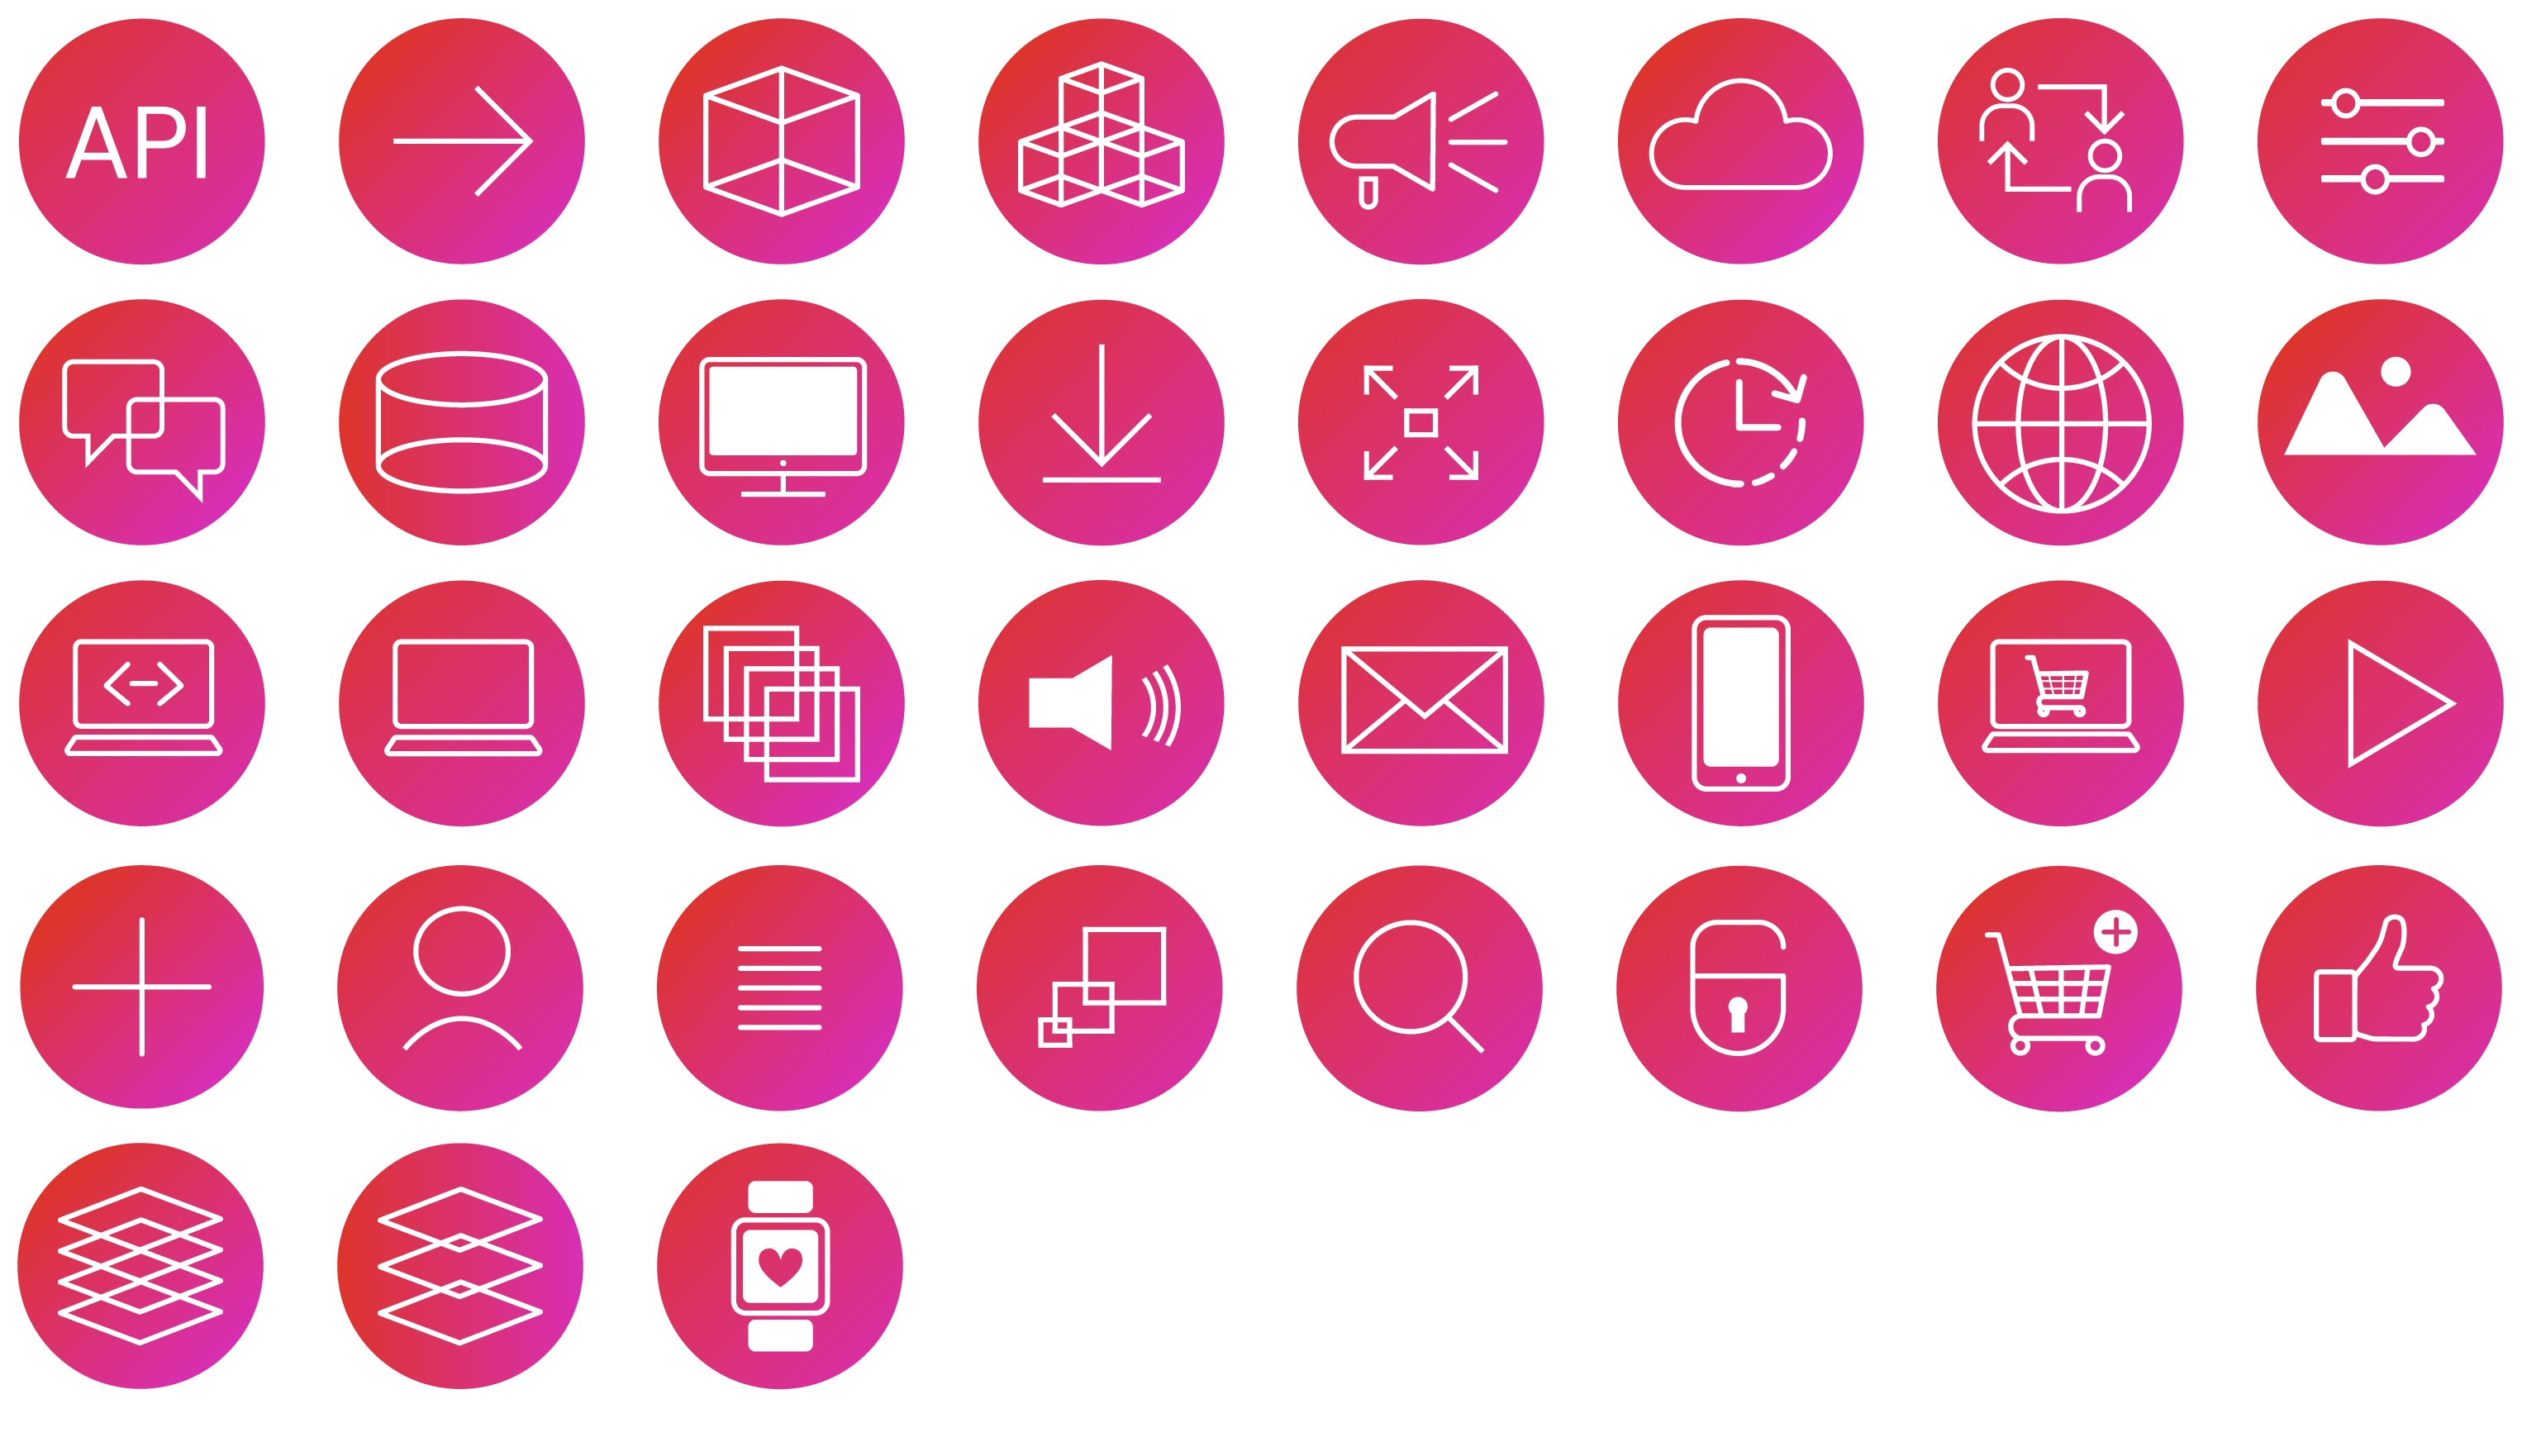 Esempio di icone grafiche nei colori del marchio CoreMedia